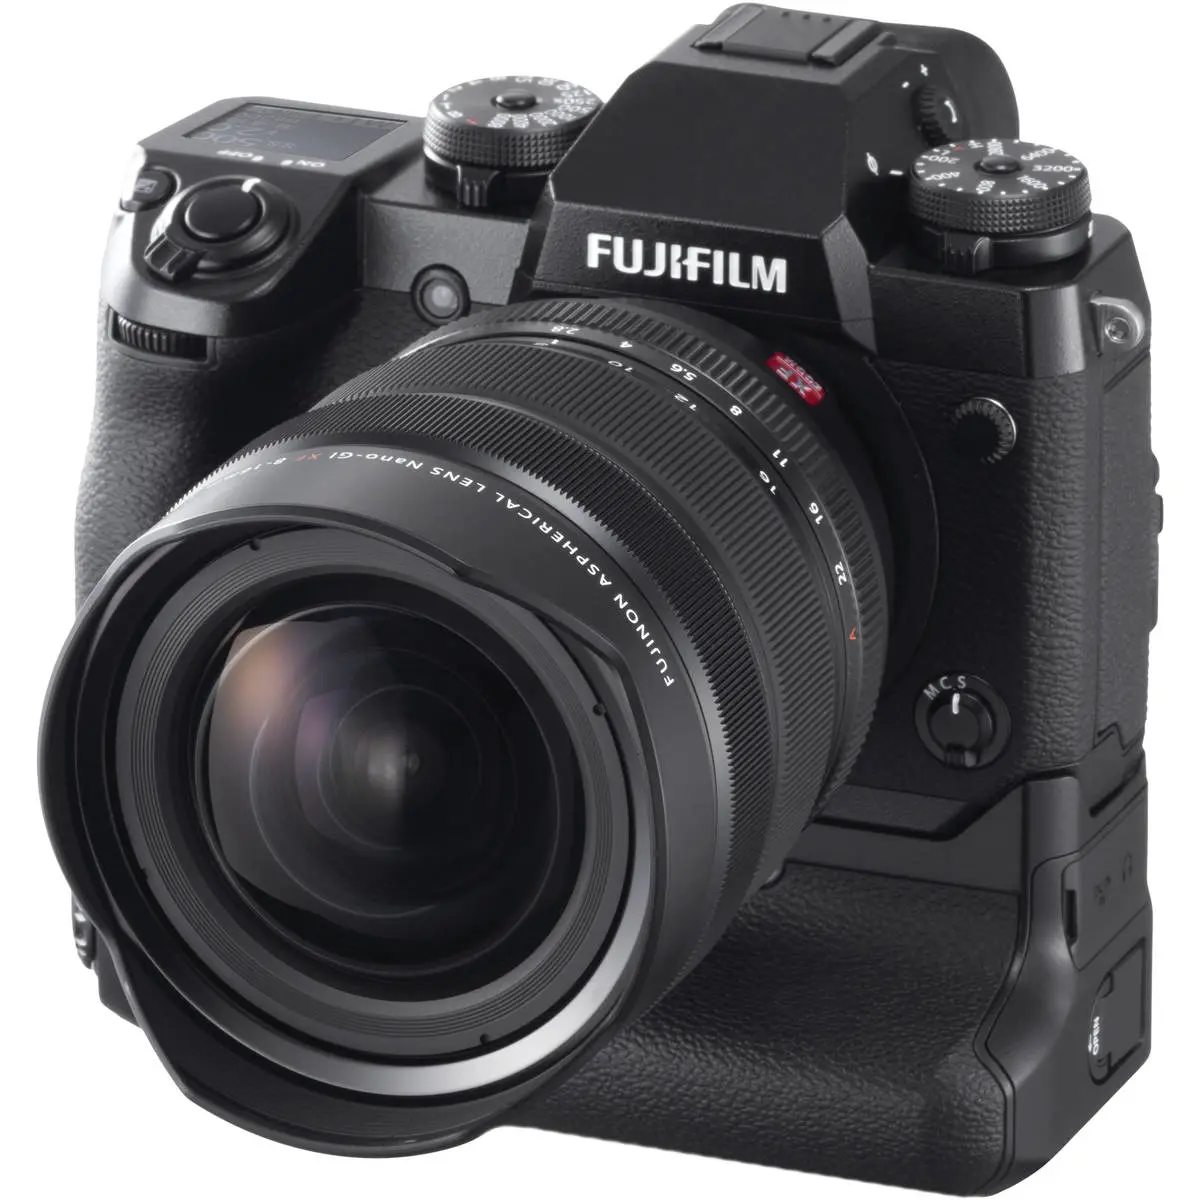 9. Fujifilm FUJINON XF 8-16mm F2.8 R LM WR Lens